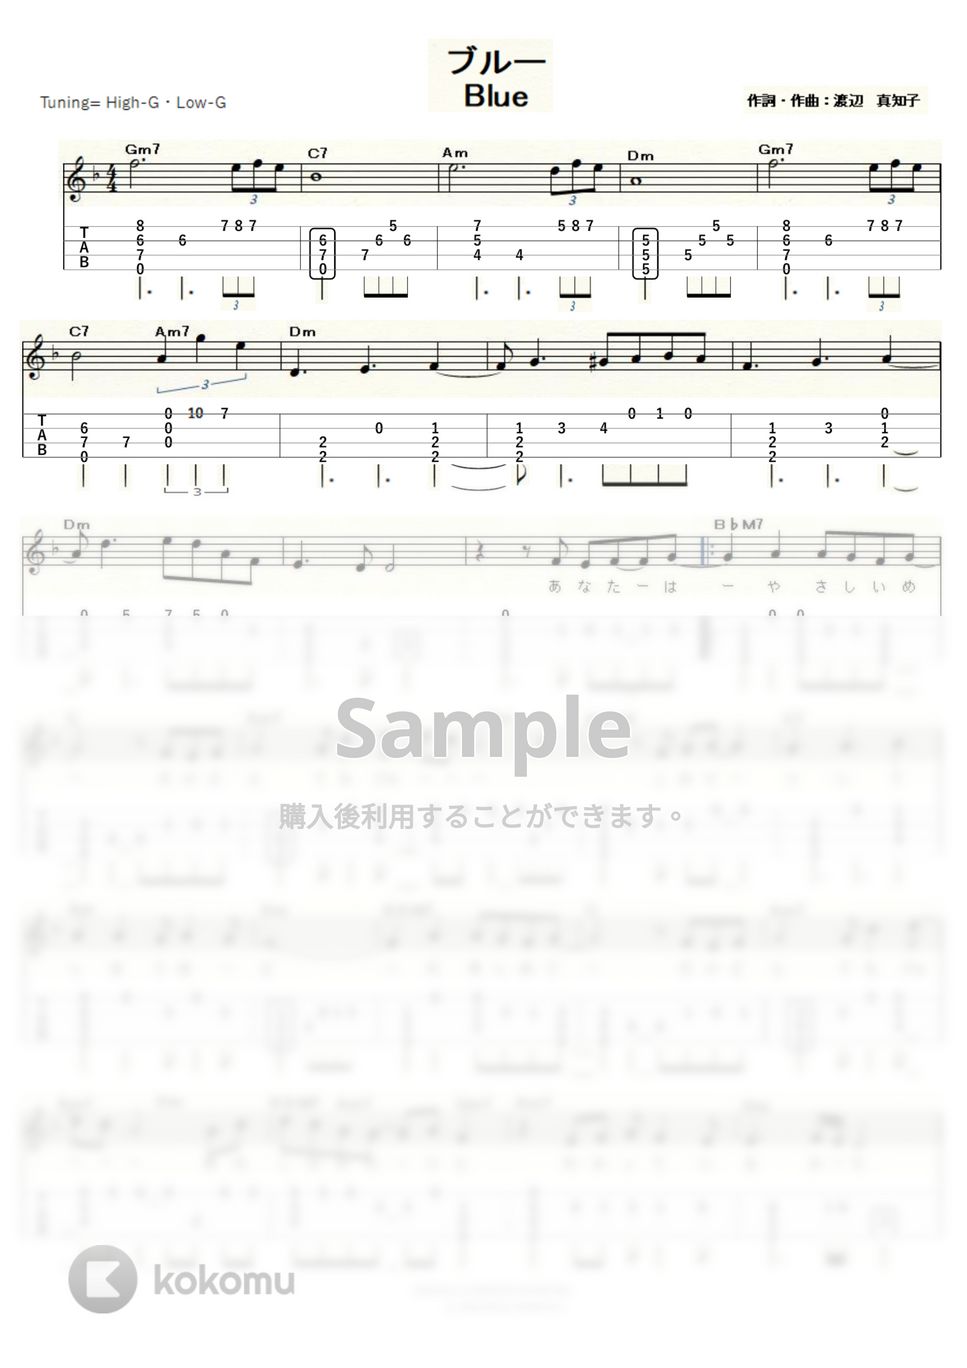 渡辺真知子 - ブルー (ｳｸﾚﾚｿﾛ / High-G・Low-G / 中級～上級) by ukulelepapa